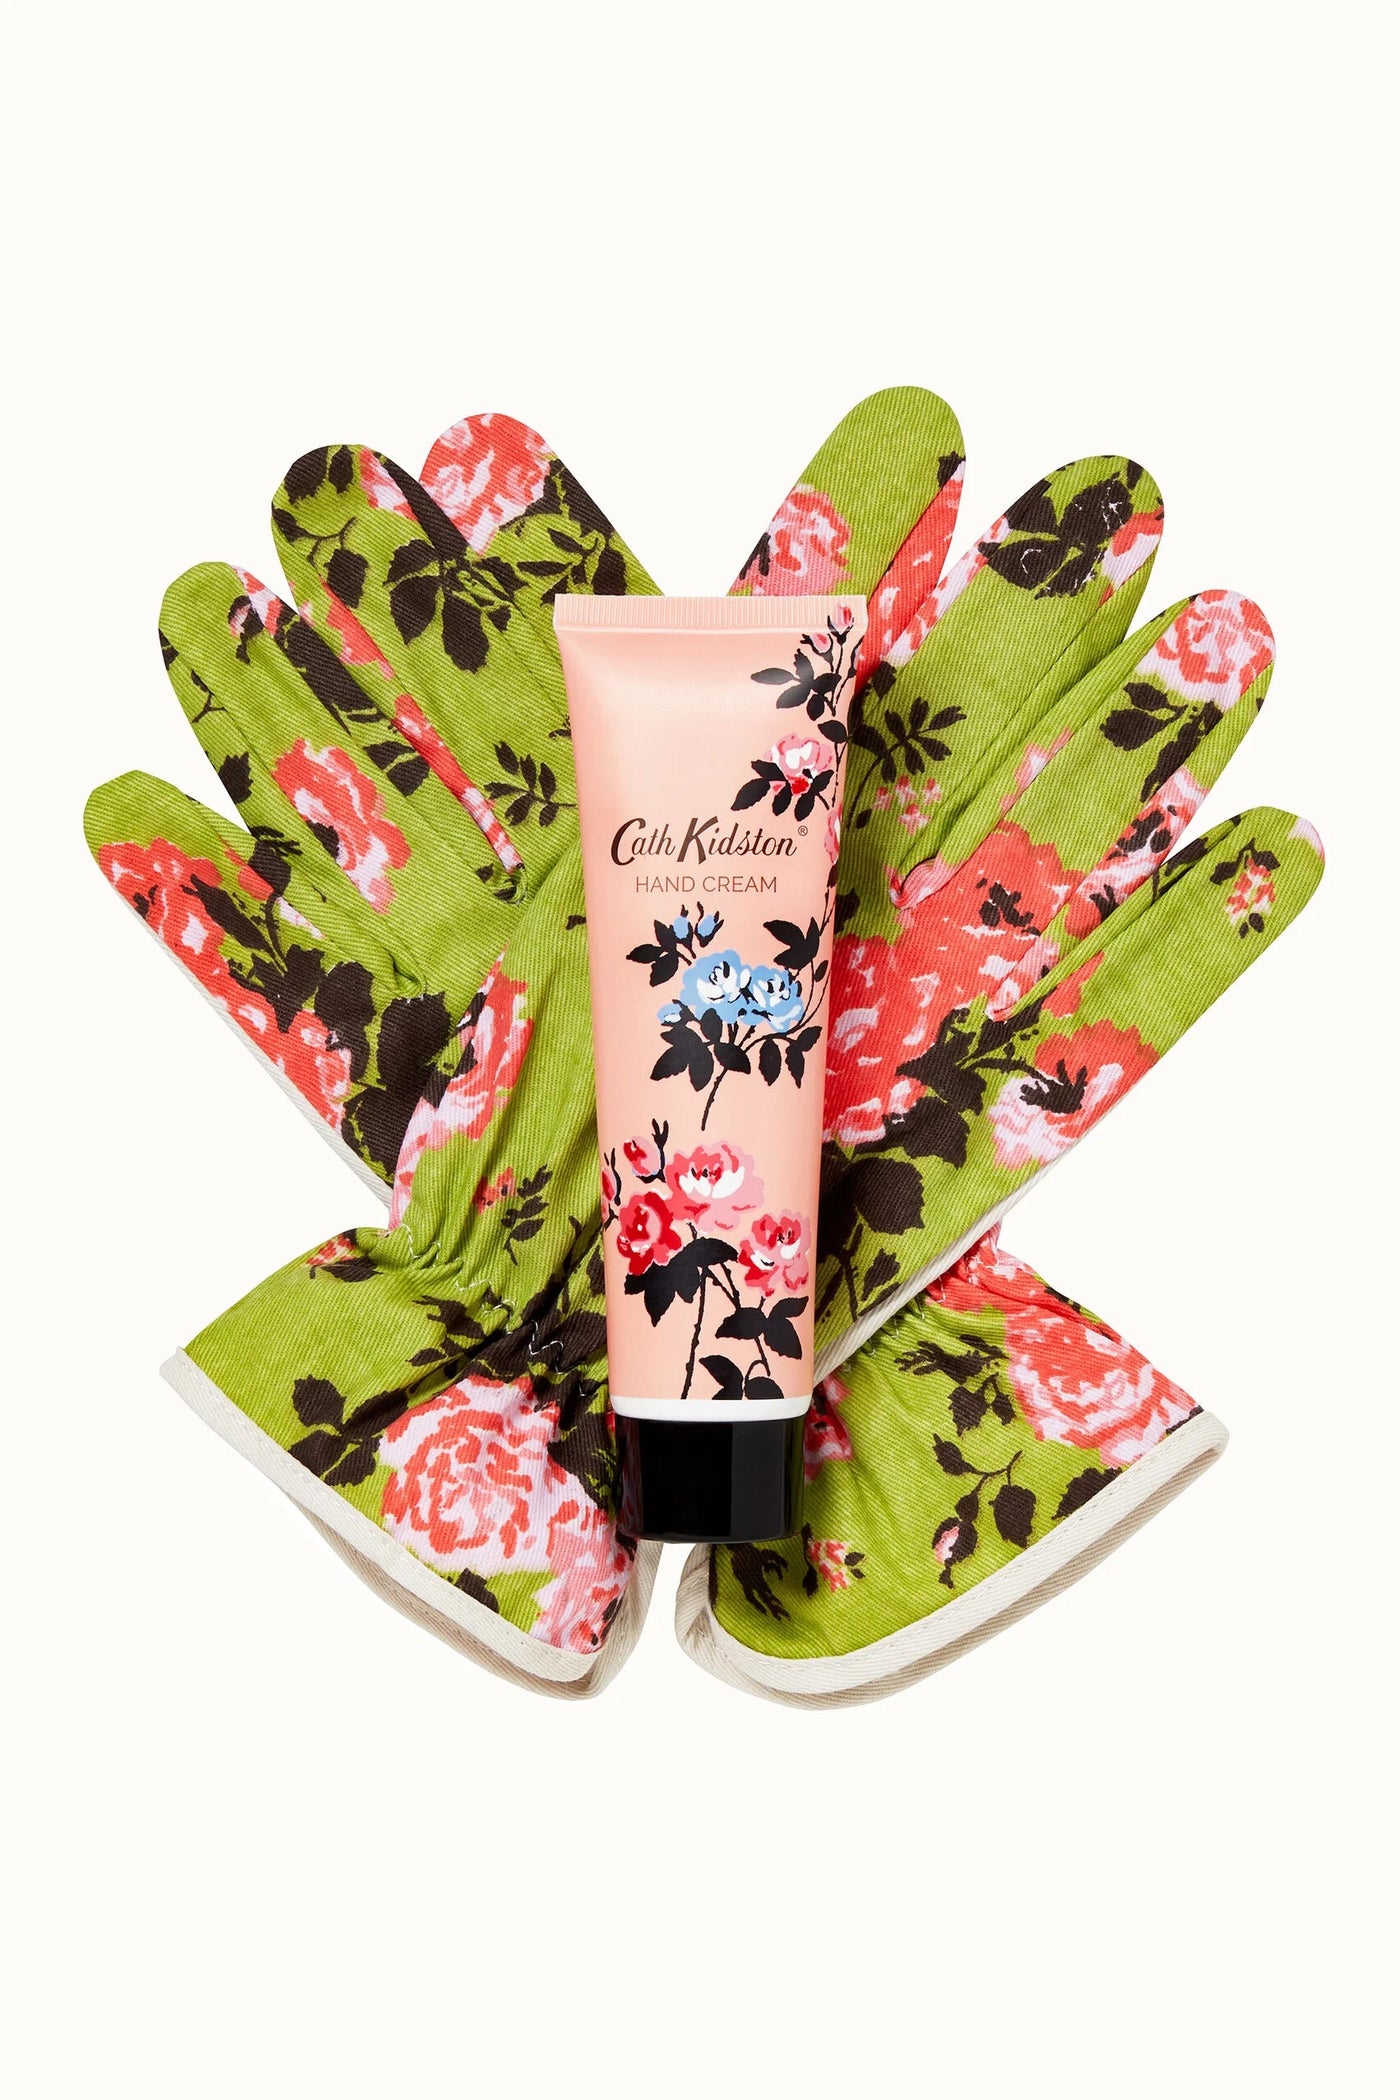 Cath Kidston The Garden Path Gardening Gloves & Hand Cream Gift Set